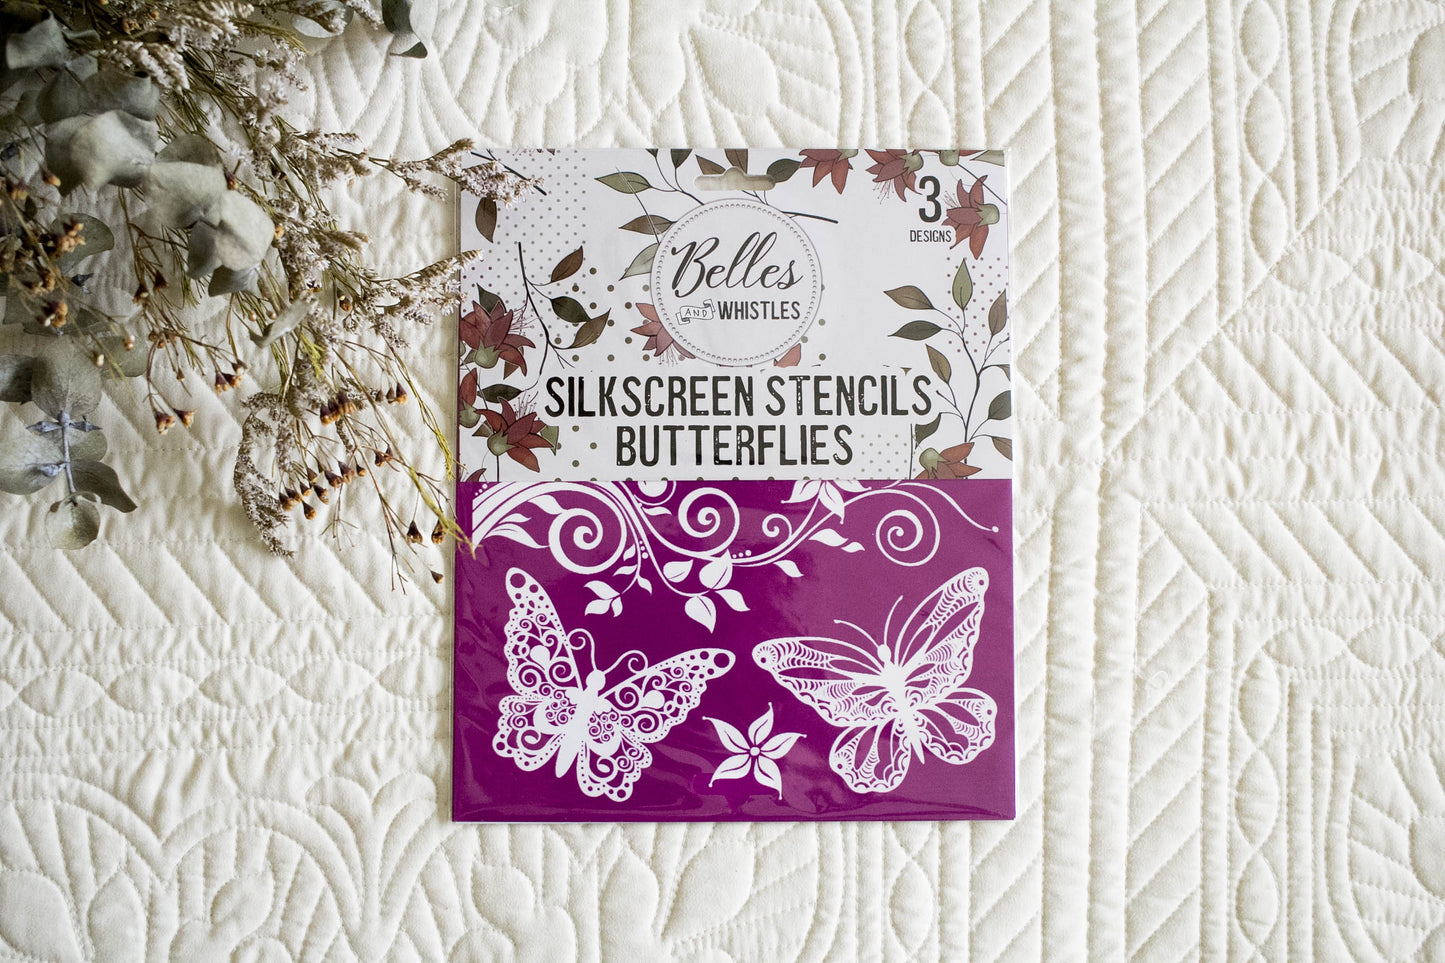 Belles and Whistles Silk Screen Stencils - Butterflies